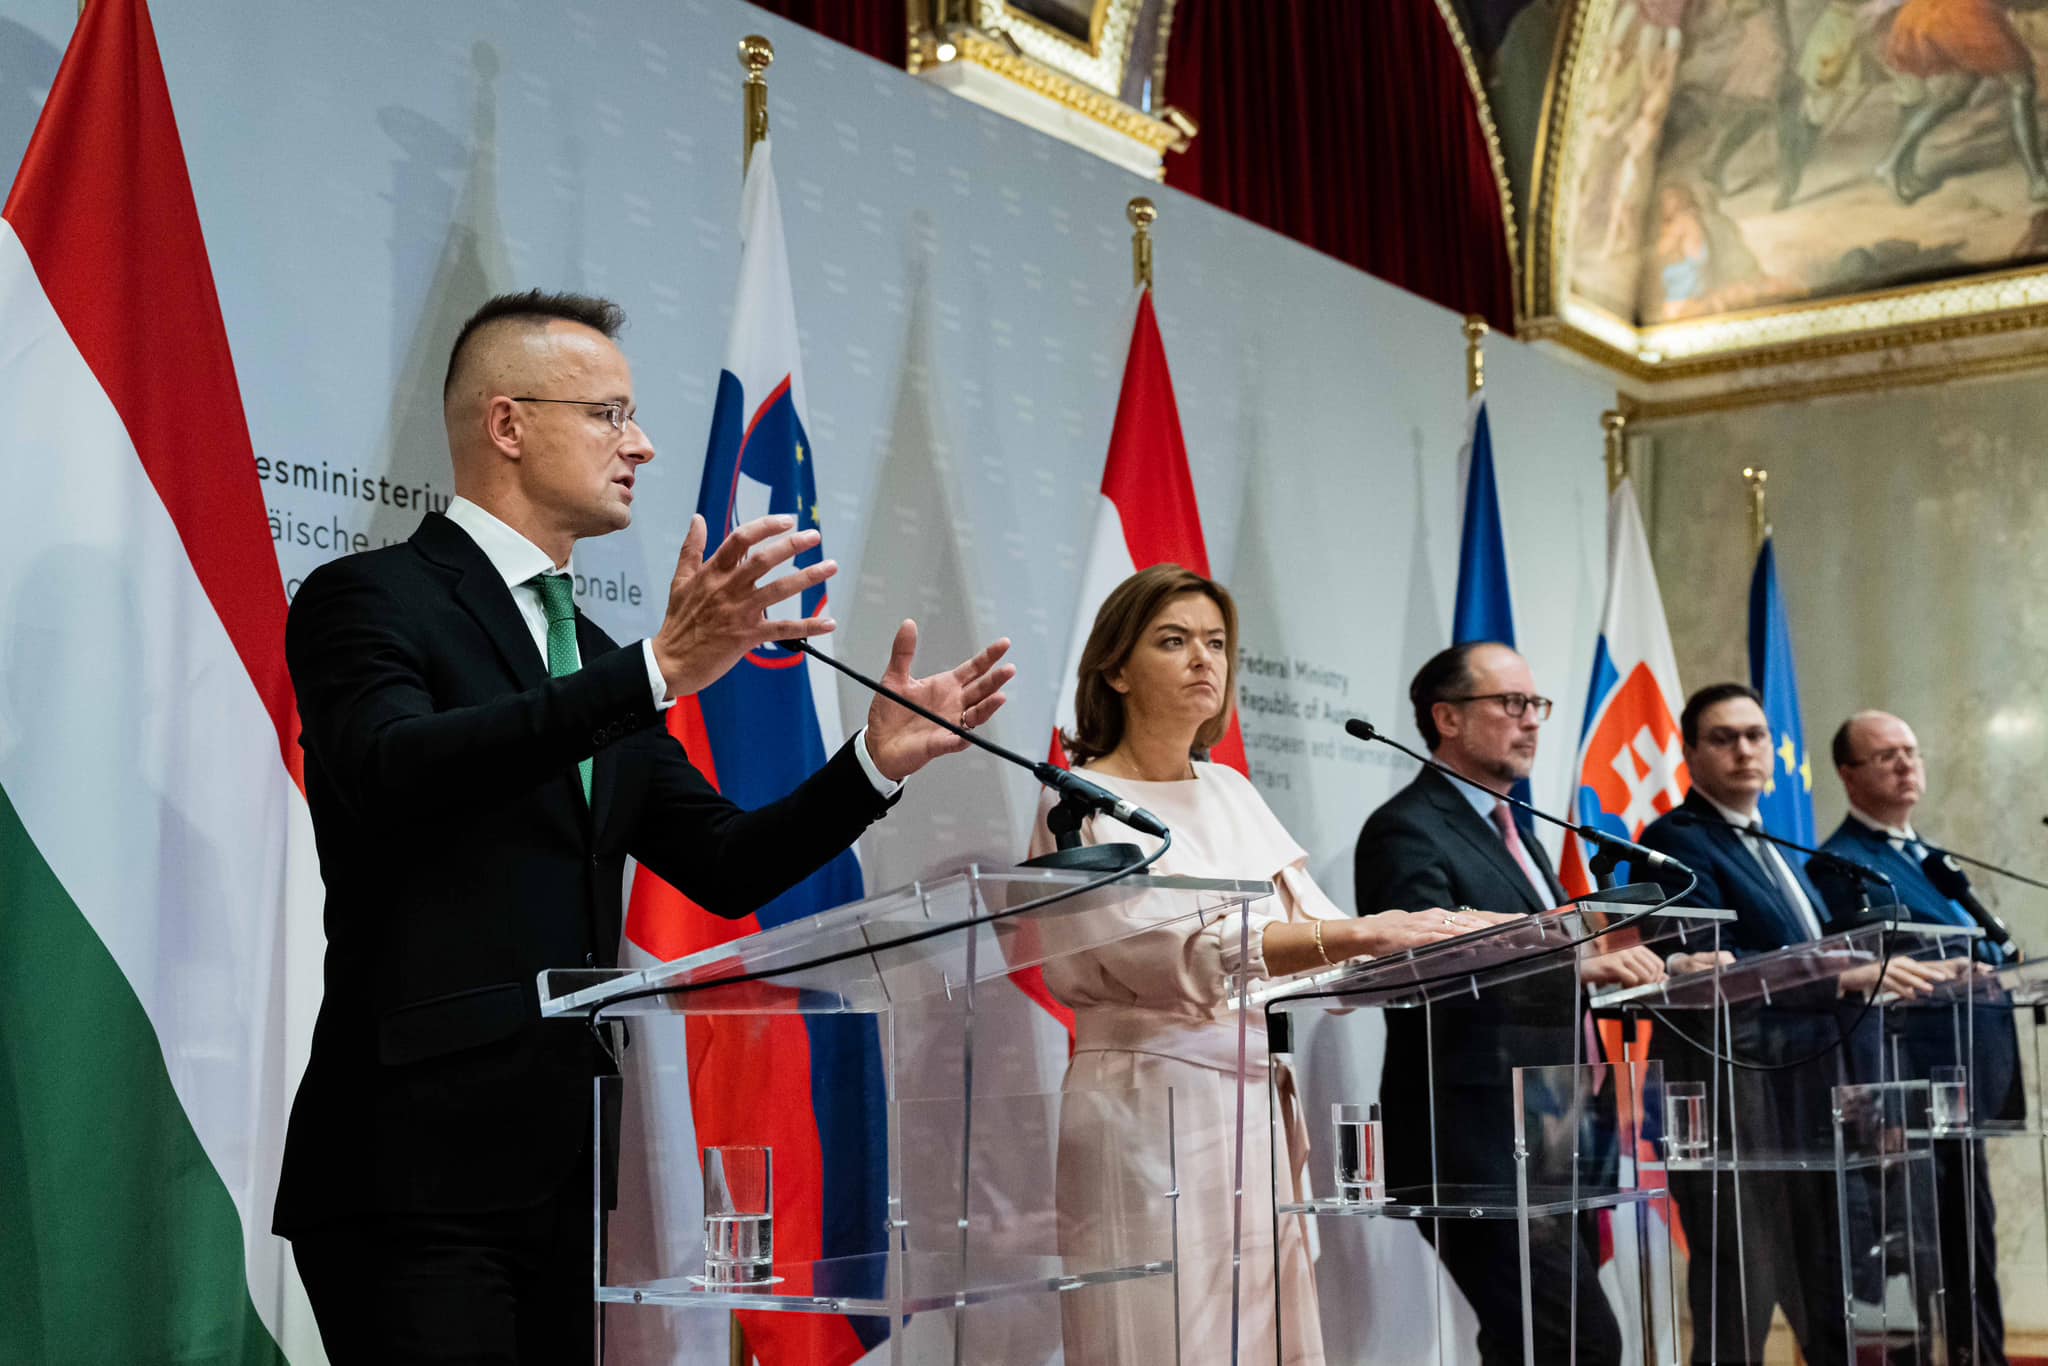 Außenminister spricht in Wien die Angriffe auf Grenzschutzbeamte an